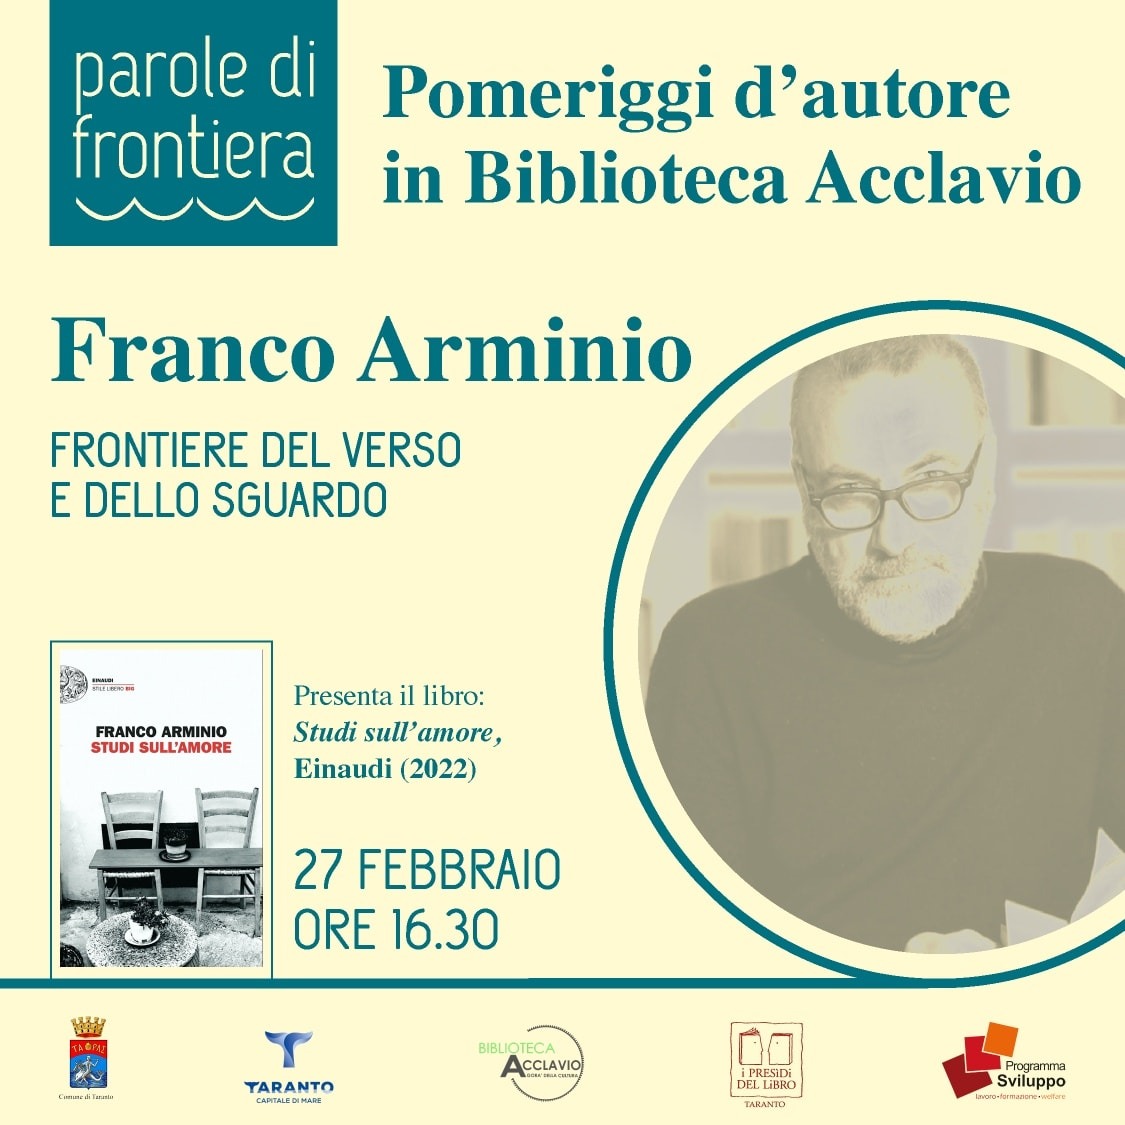 Pomeriggi d’autore Franco Arminio presenta il suo libro: “Studi sull’amore”